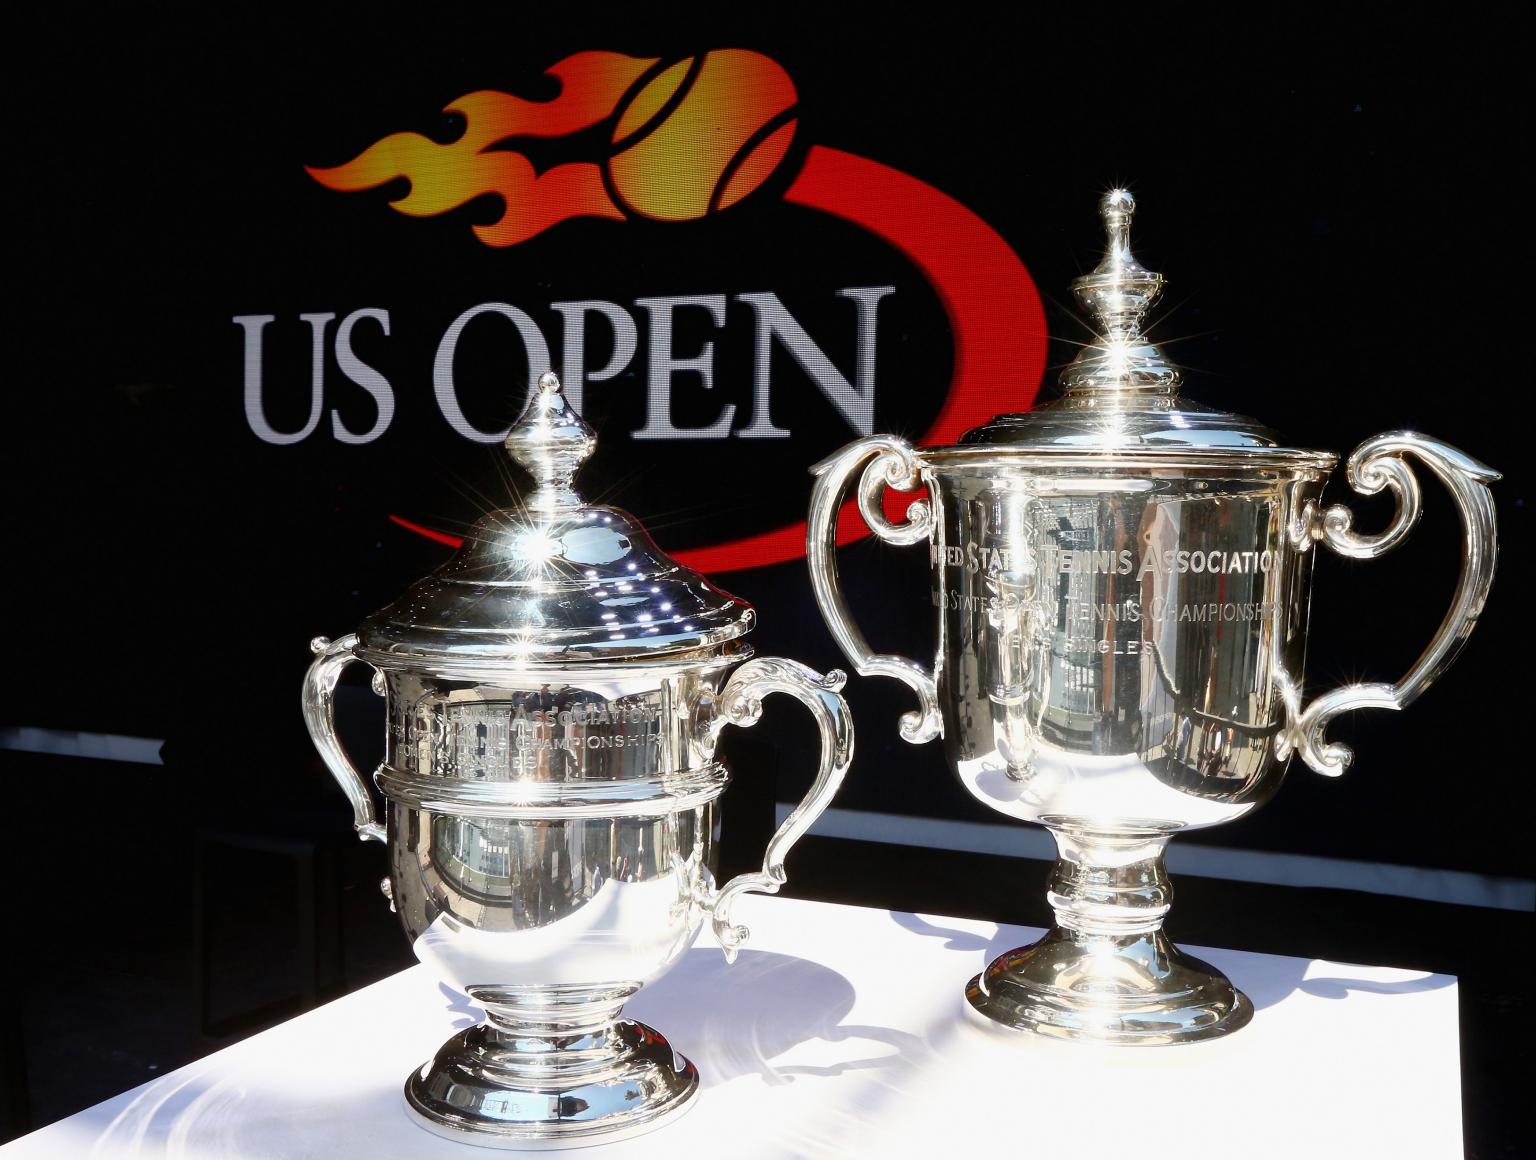 US Open trophies